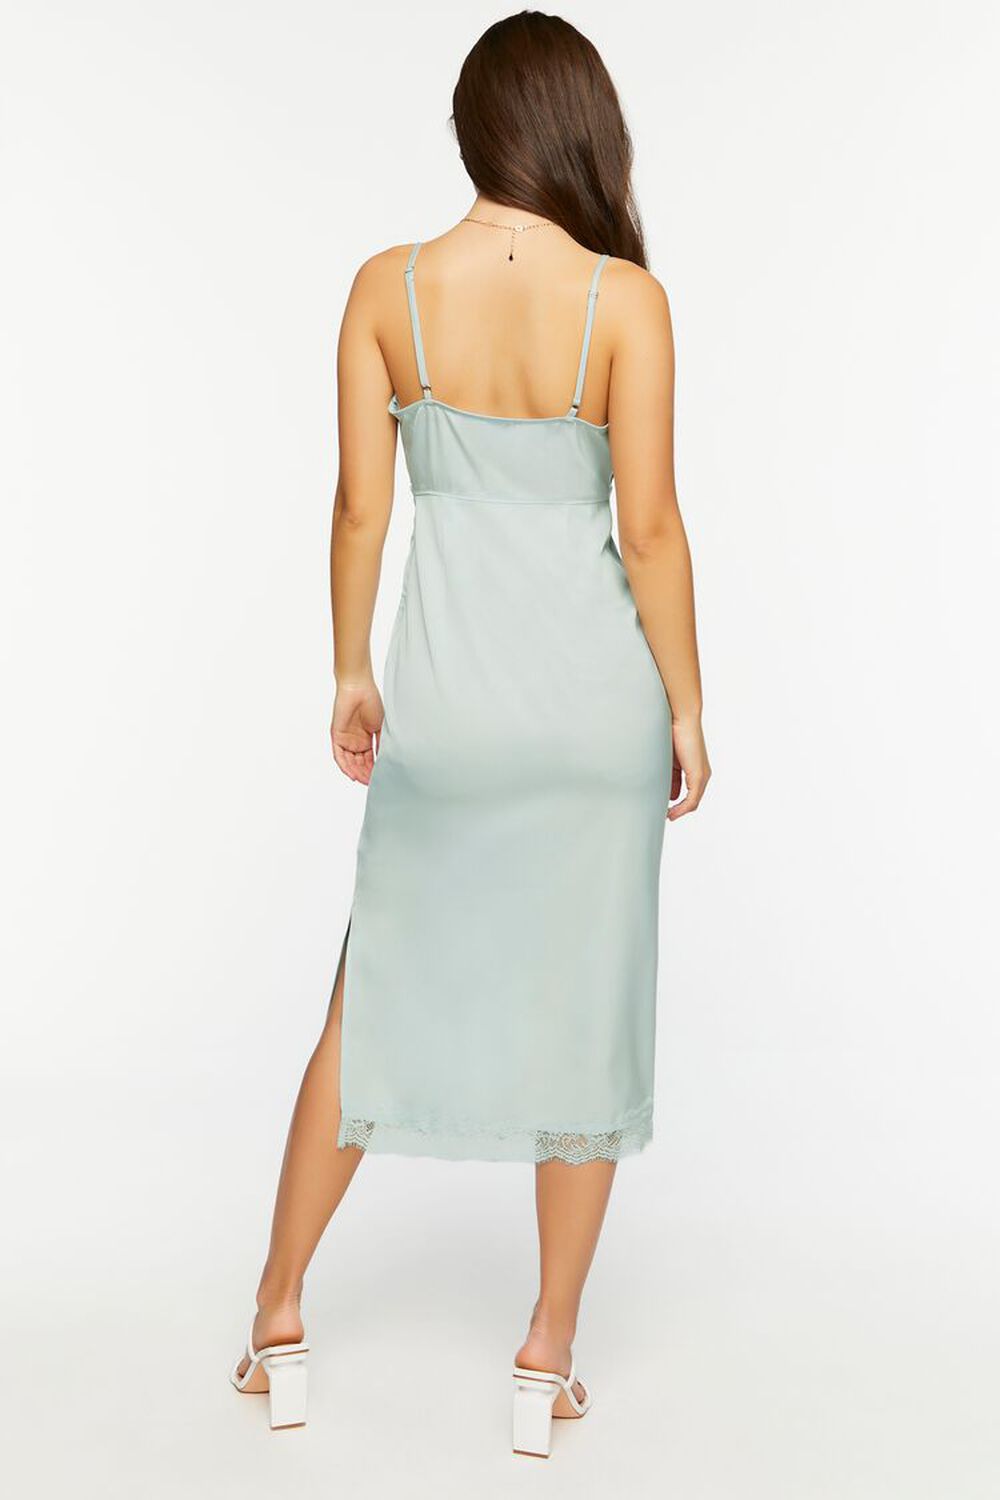 BLUE Satin Lace-Trim Midi Slip Dress, image 3